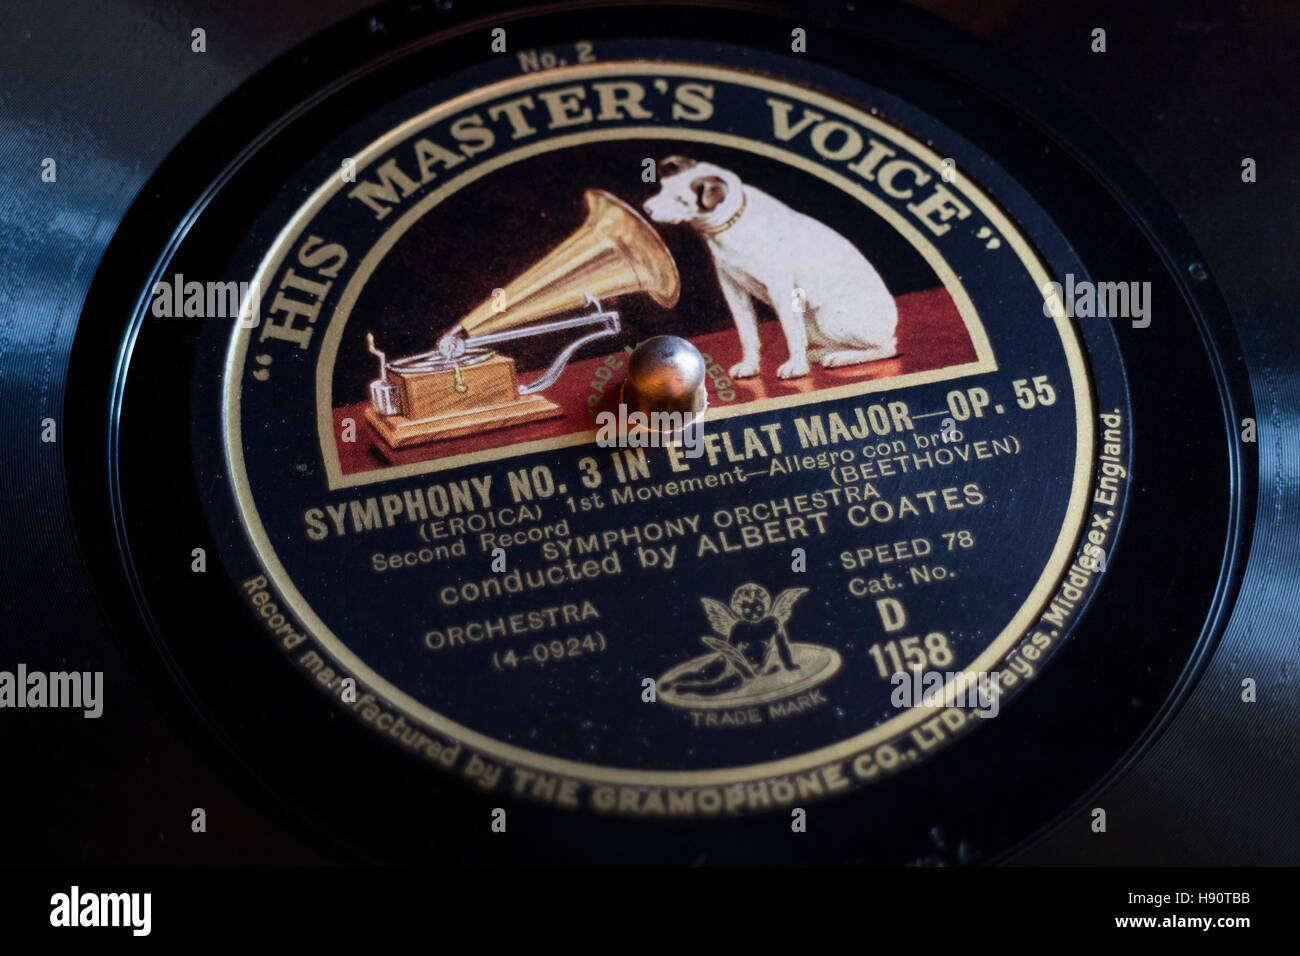 Gramófono clásico registro con la marca su voz masters Foto de stock